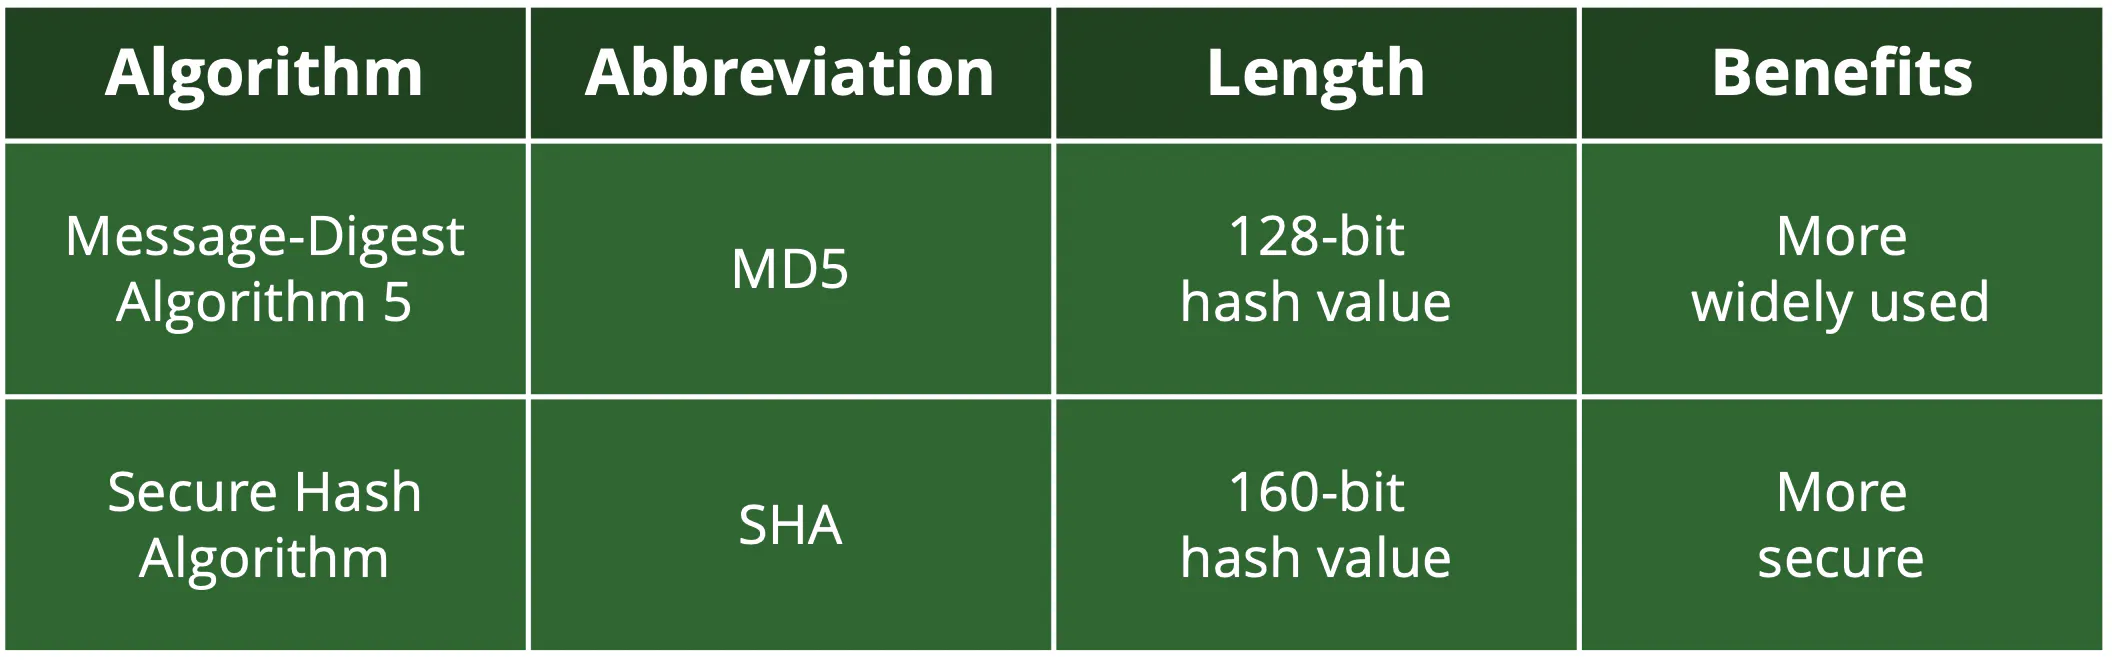 兩種類型的散加演算法是 MD5 和 SHA，而前者使用更廣泛，後者更安全